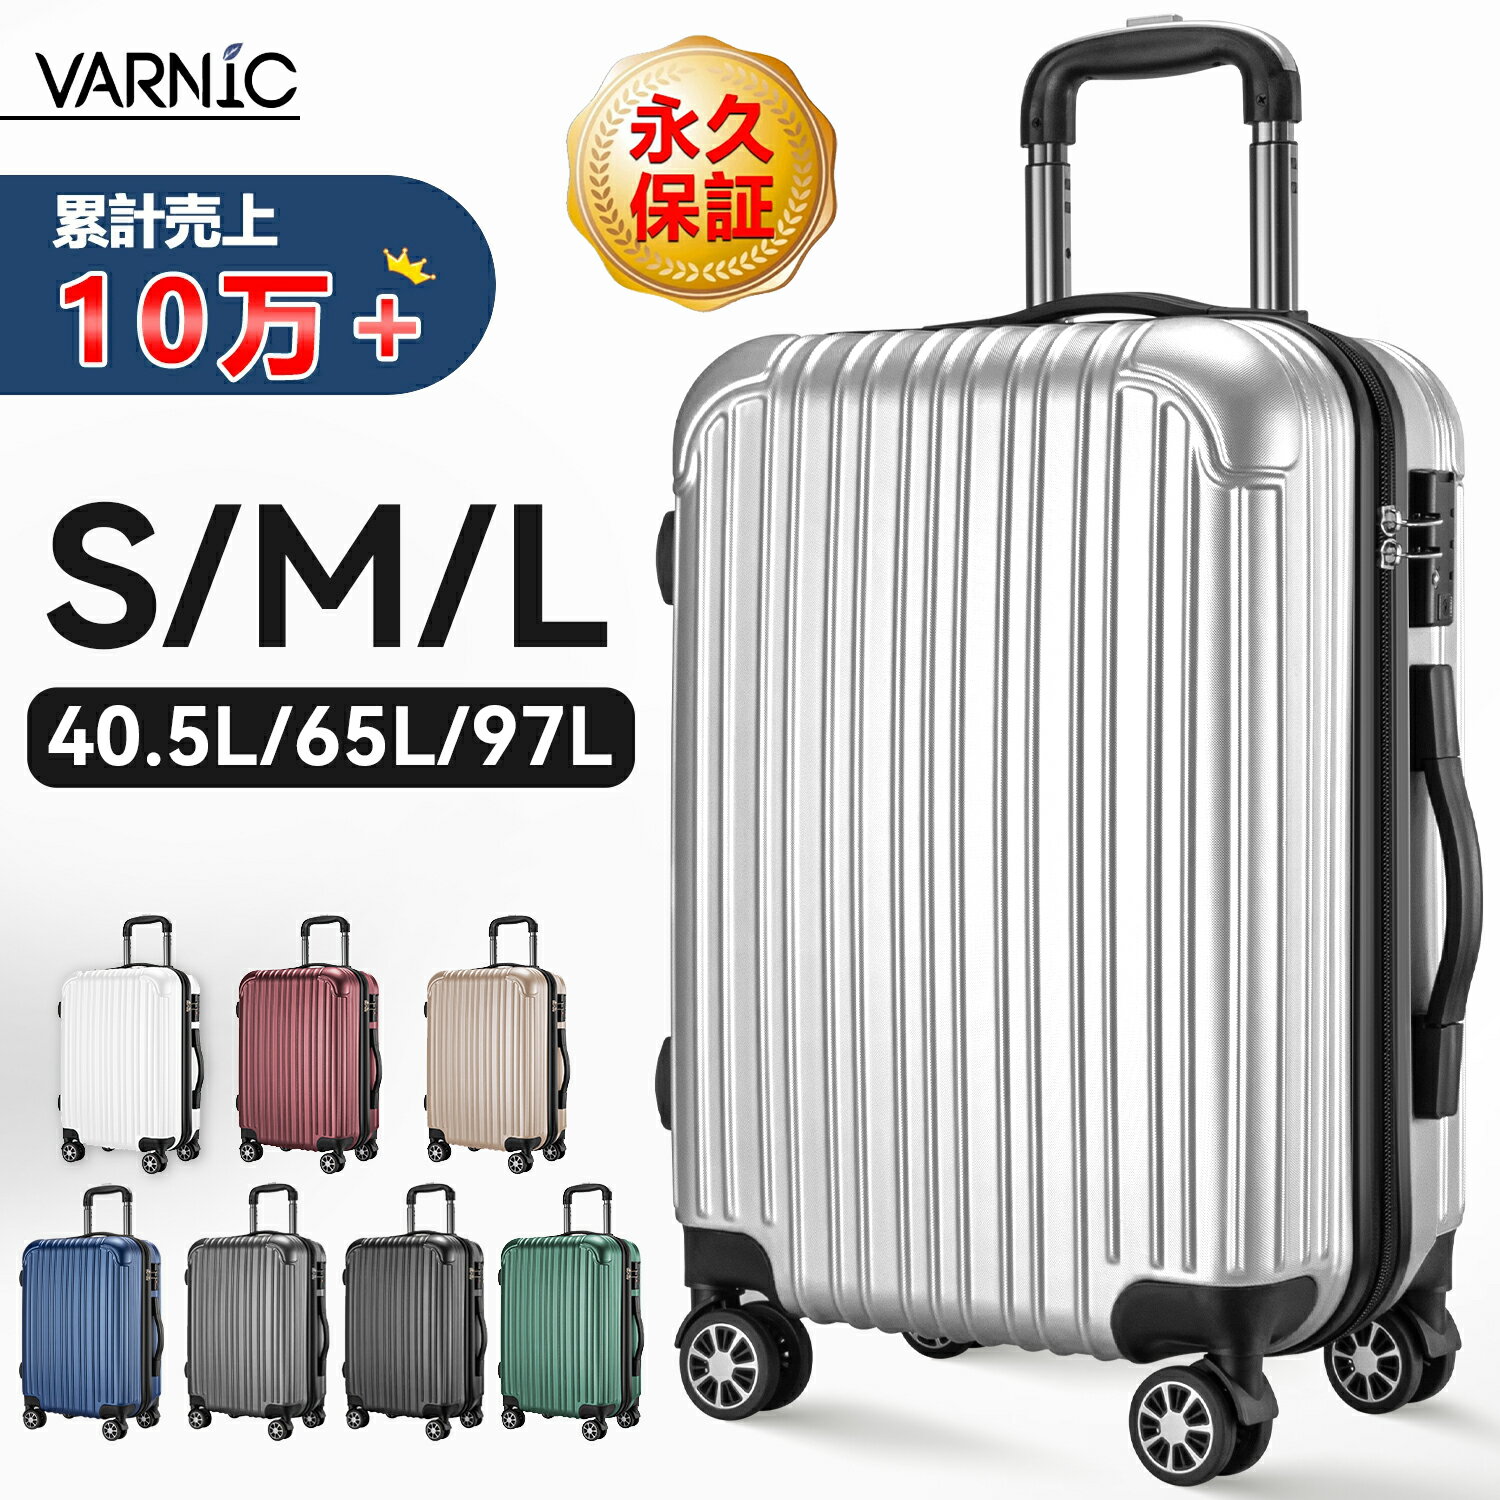 スーツケース キャリーバッグ キャリーケース 機内持ち込み ダブルキャスター 360度回転 TSAローク搭載 ファスナー式 ビジネス (S/M/L, 40.5L/65L/97L) VARNIC